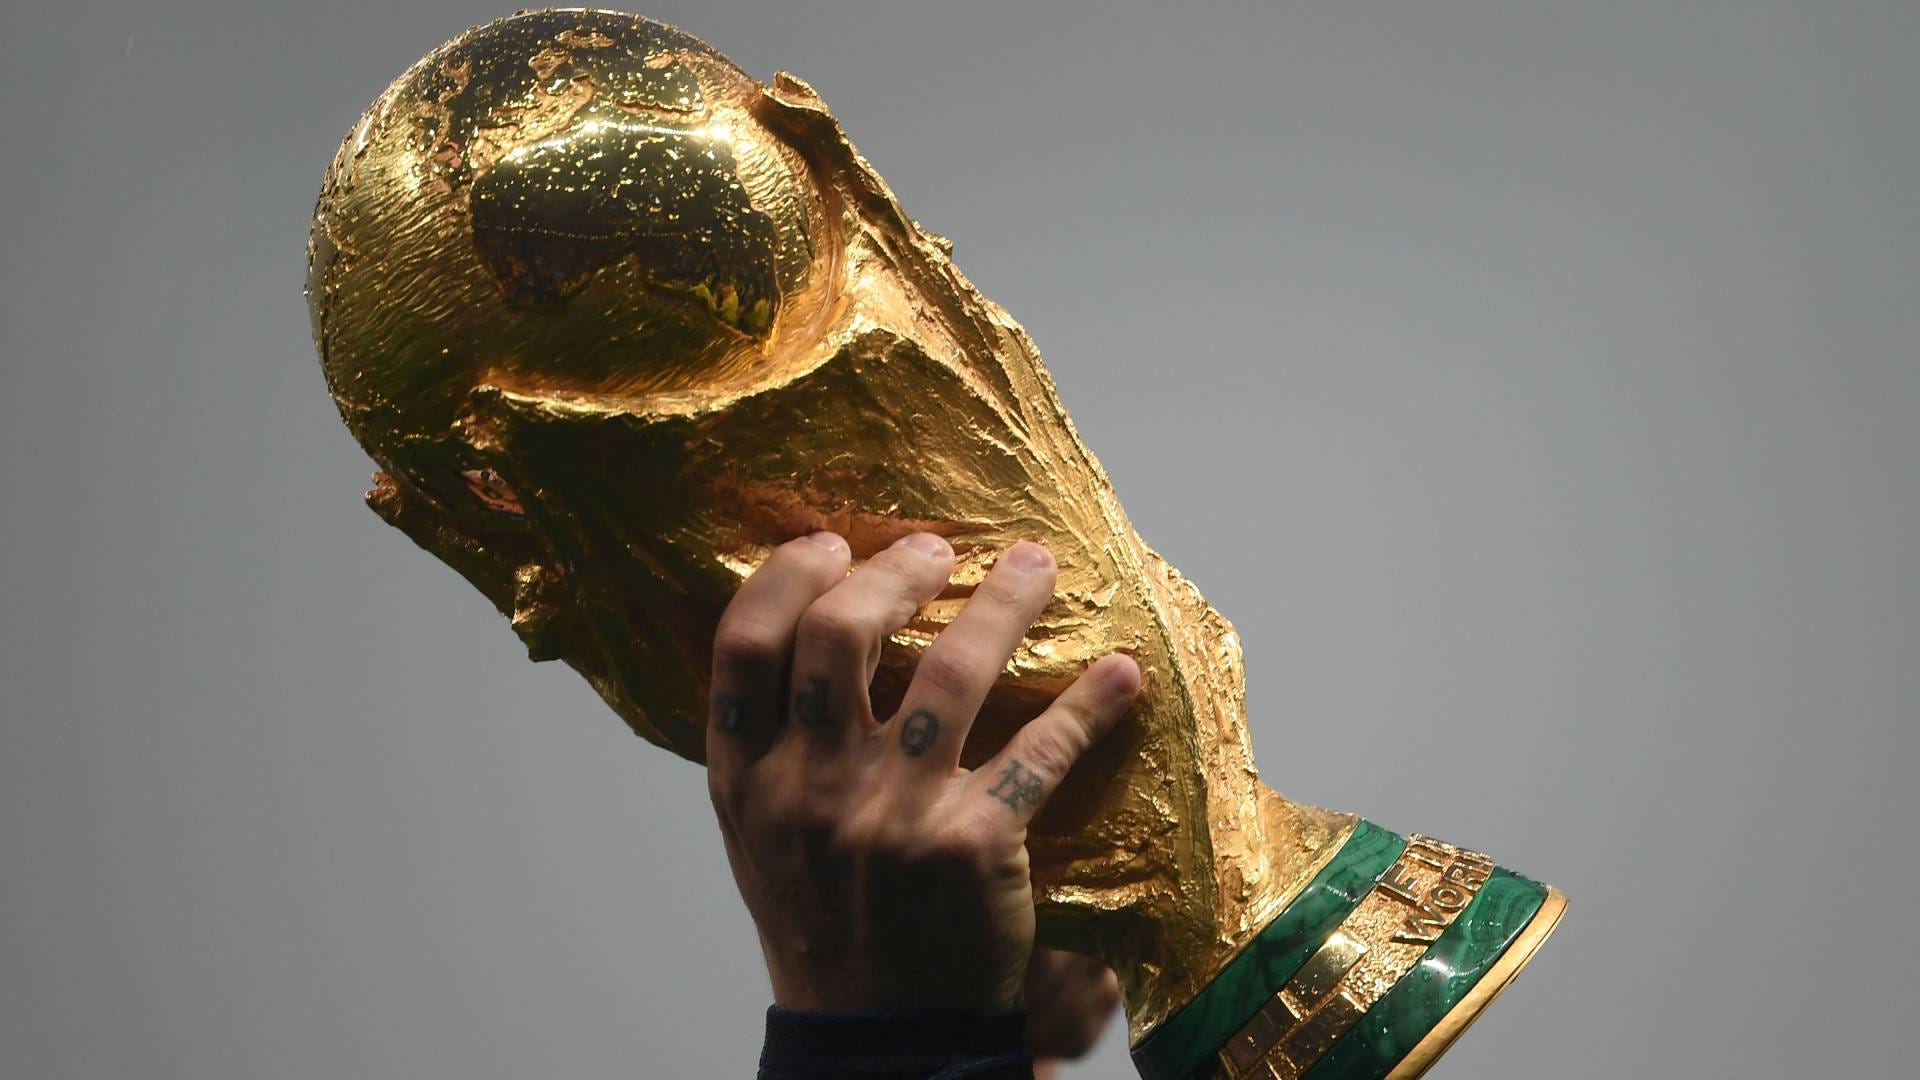 WM 2022 live Wer zeigt / überträgt das Finale heute? Sender, Tag, Anstoß Goal Deutschland